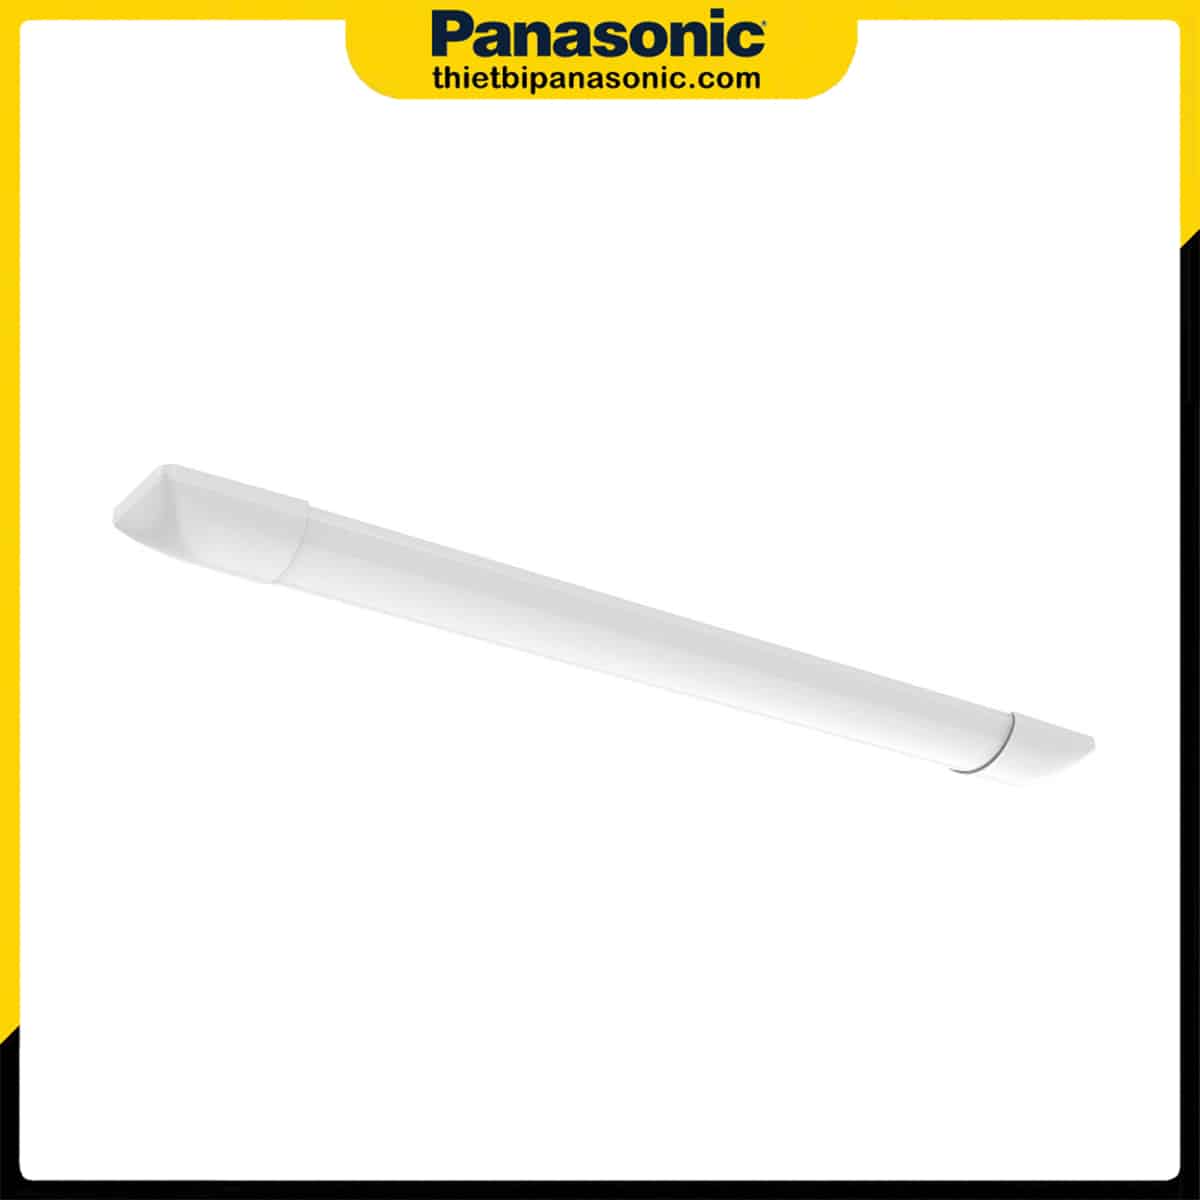 Đèn LED bán nguyệt 60cm 18W Panasonic NNFC5004088 (ánh sáng vàng), NNFC5009088 (ánh sáng trung tính), NNFC5009588 (ánh sáng trắng) có thiết kế hiện đại